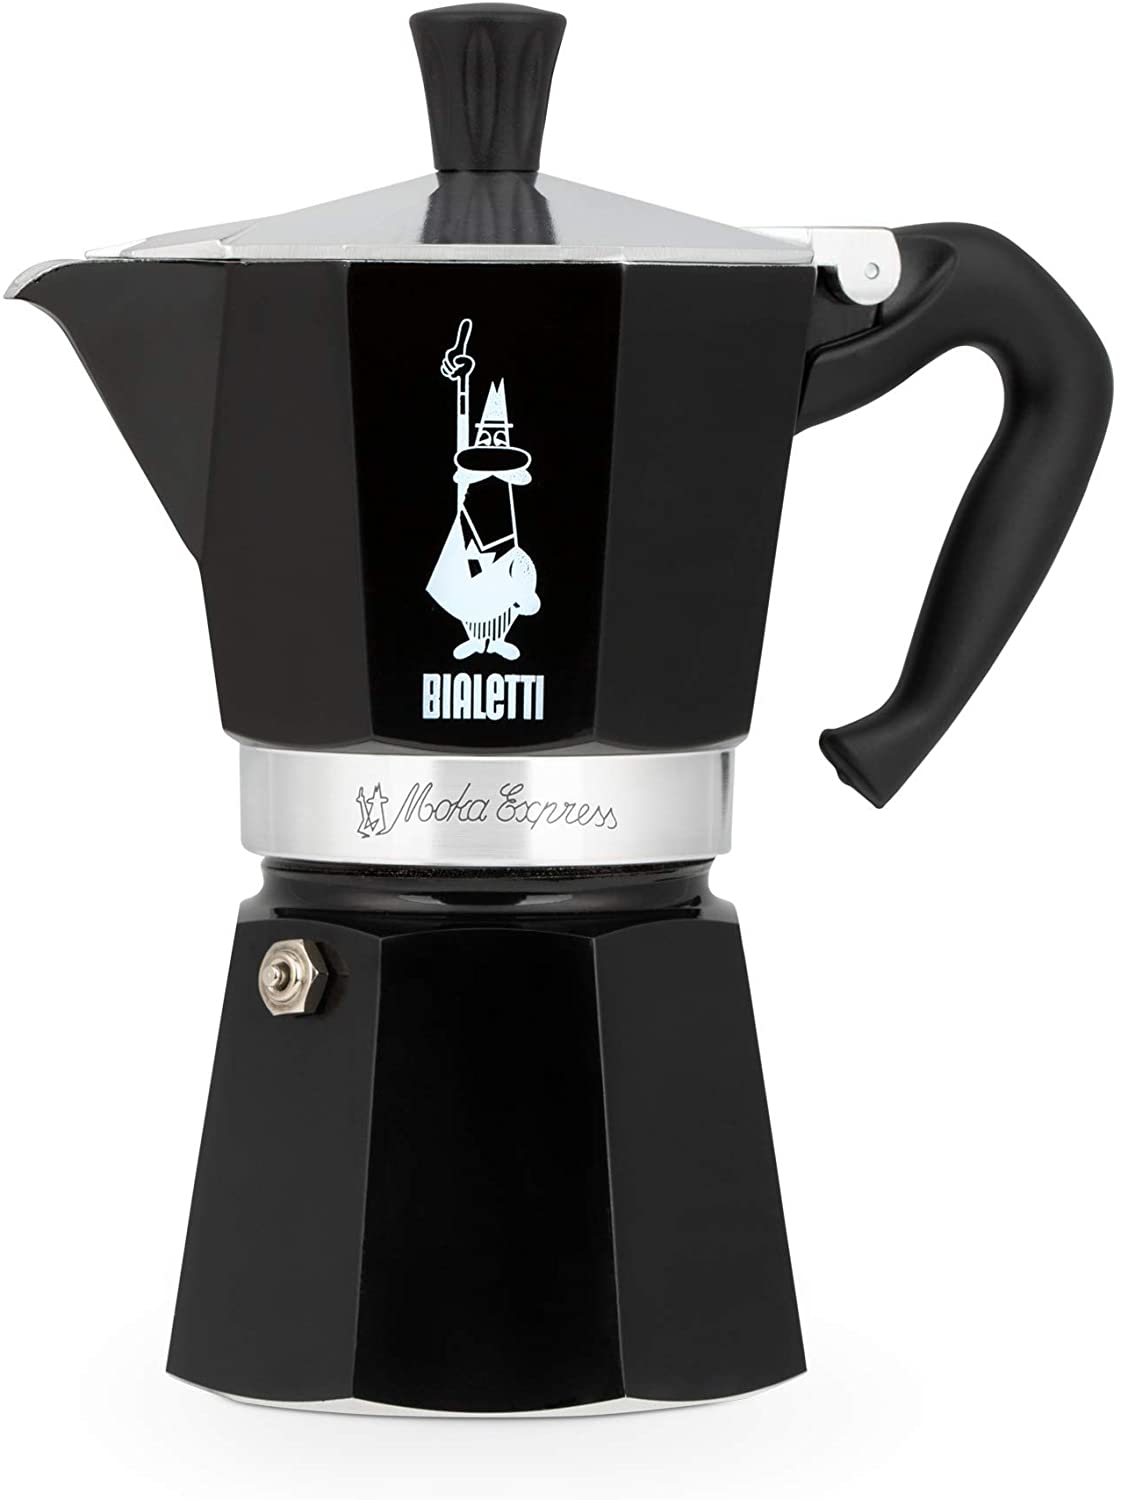  Bialetti - Moka Express: Máquina de café expreso